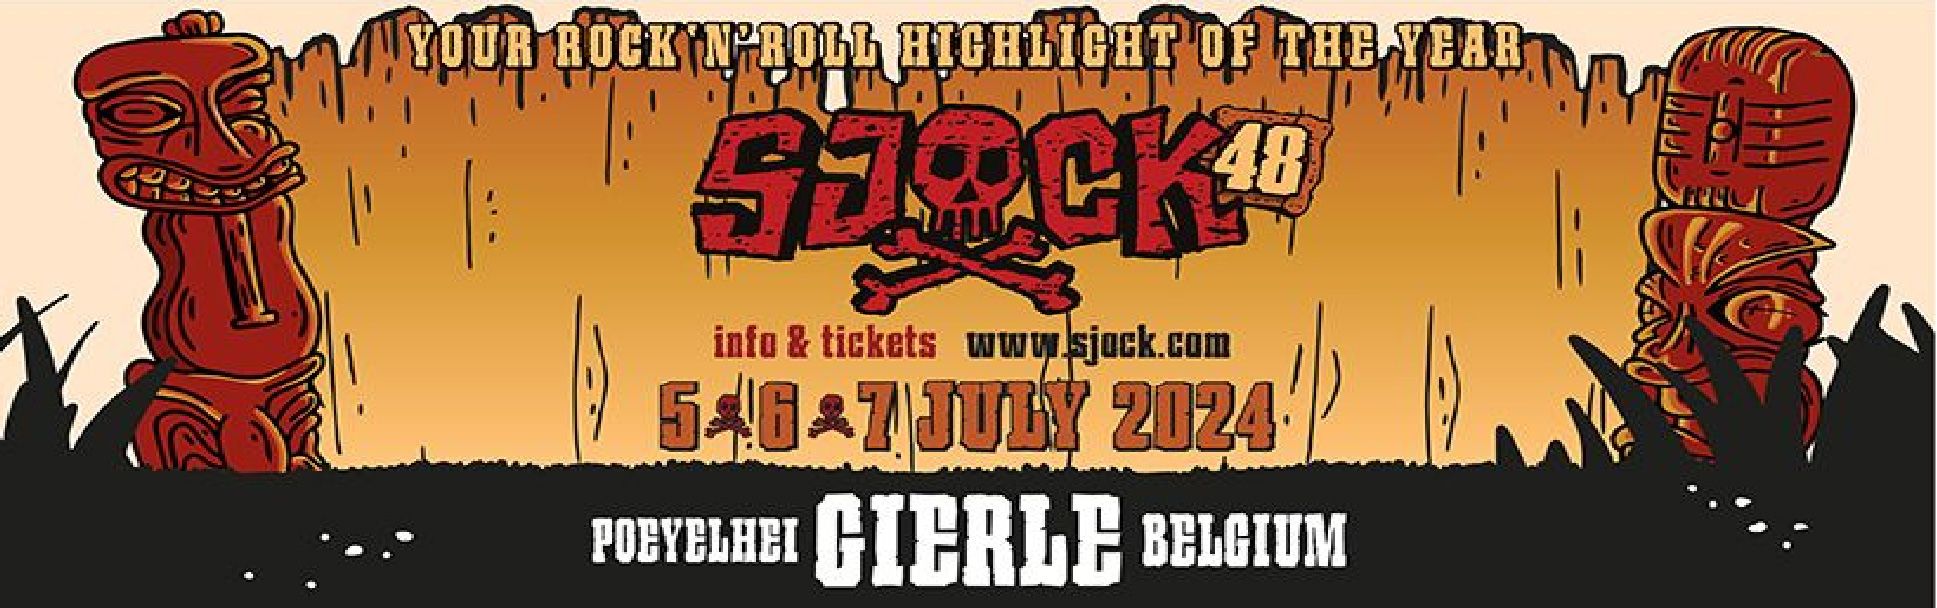 Sjock Festival header